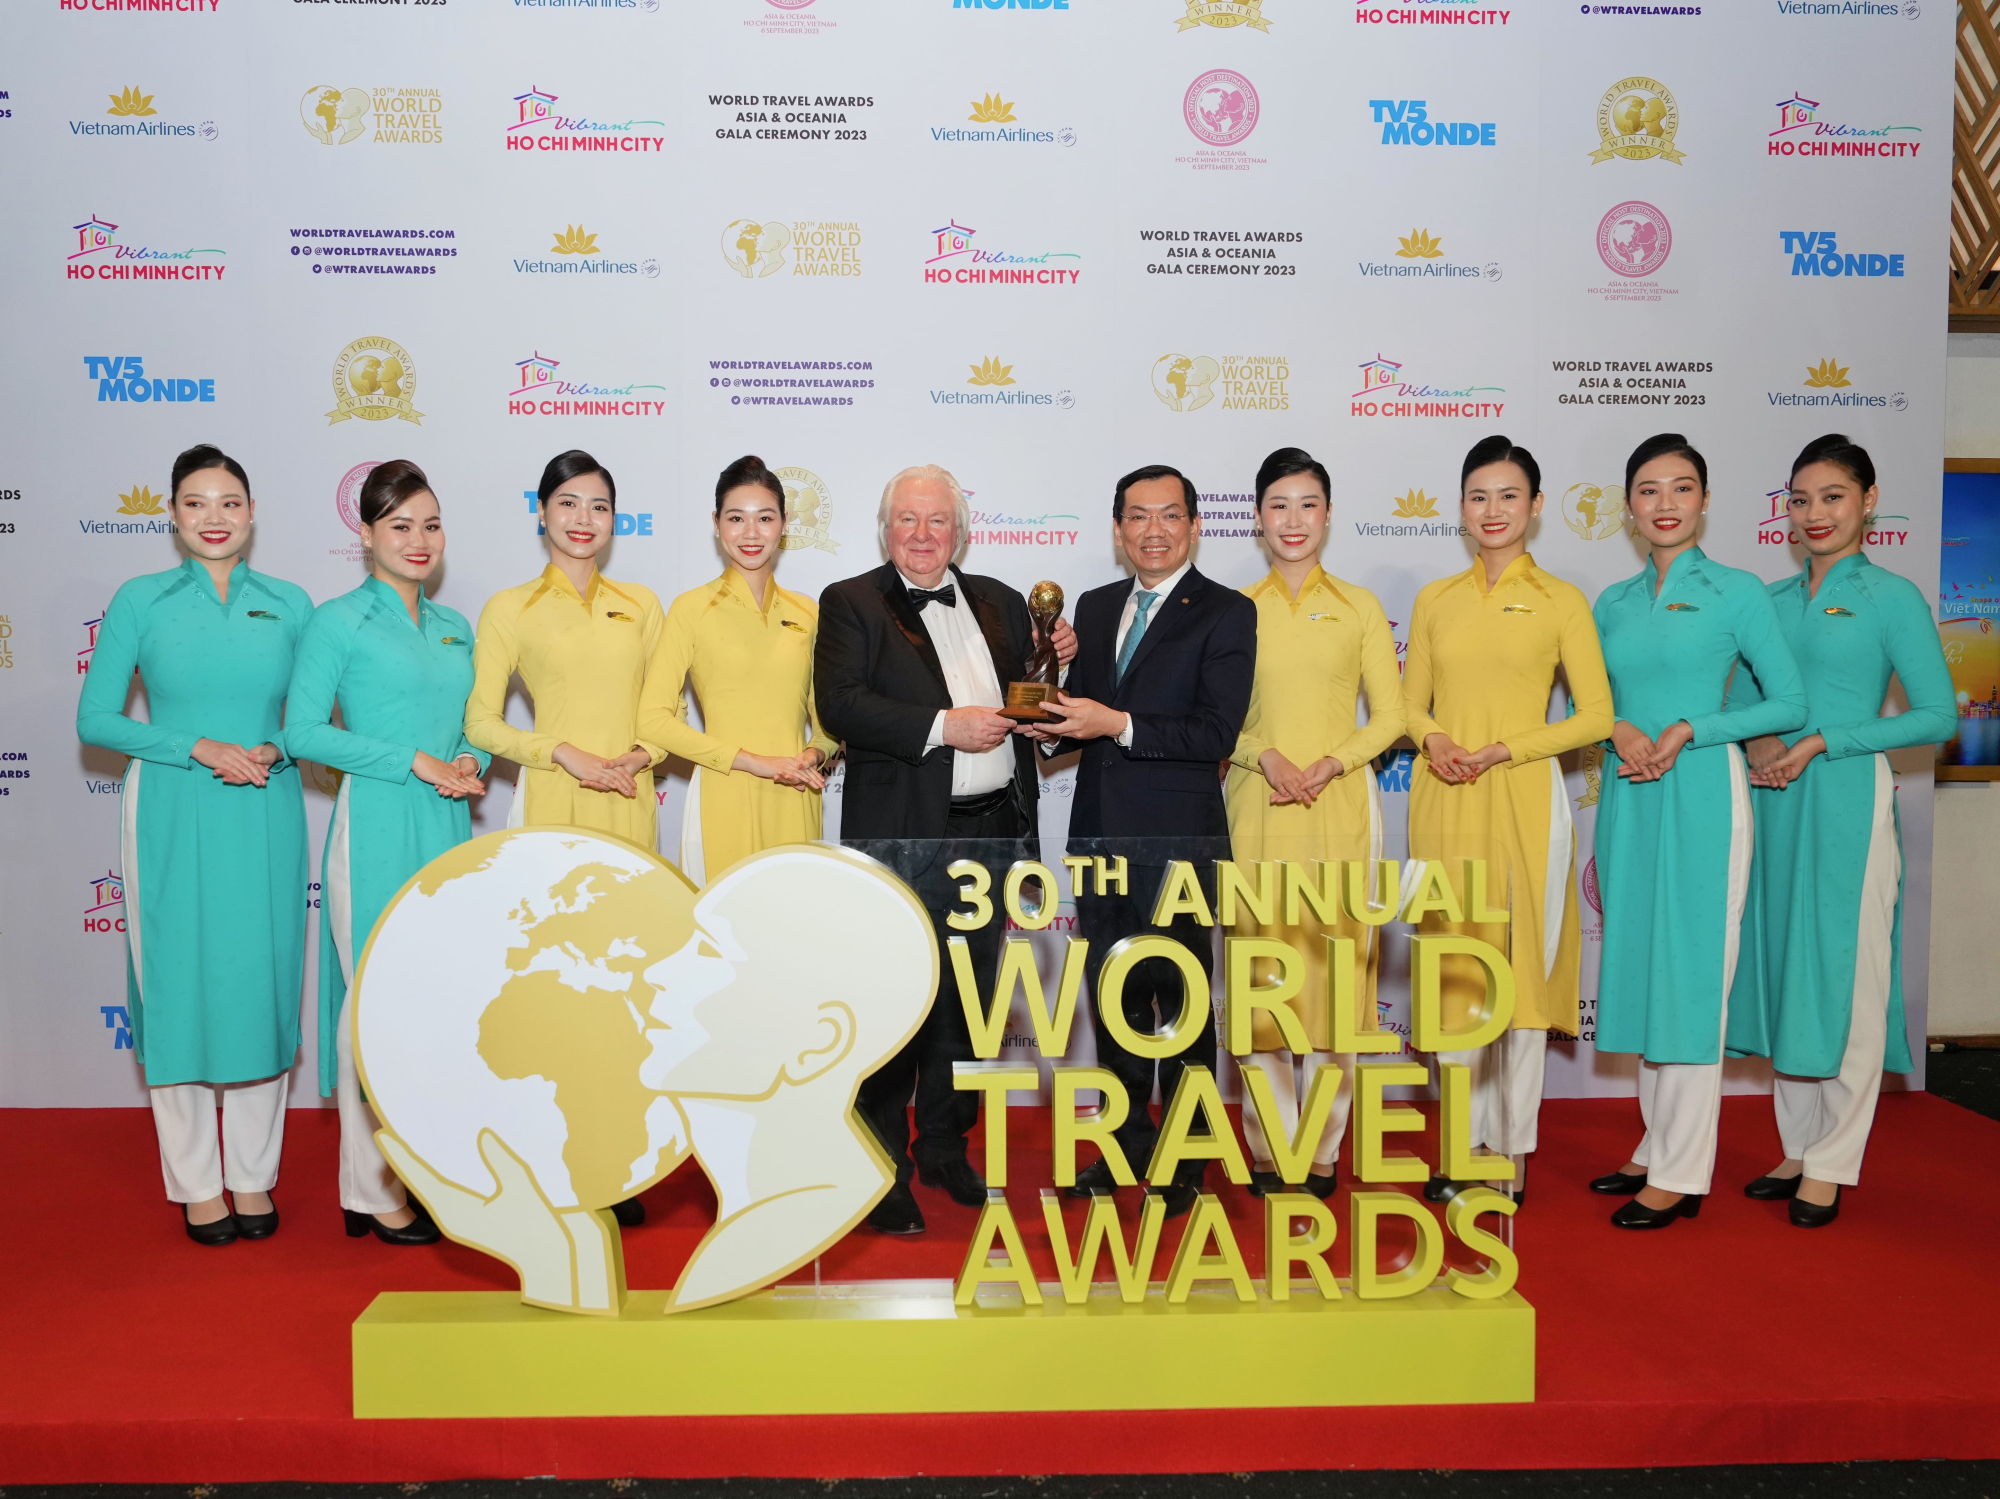 vietnam airlines nhan bon giai thuong tai world travel awards khu vuc chau a va chau dai duong 2023 hinh 5